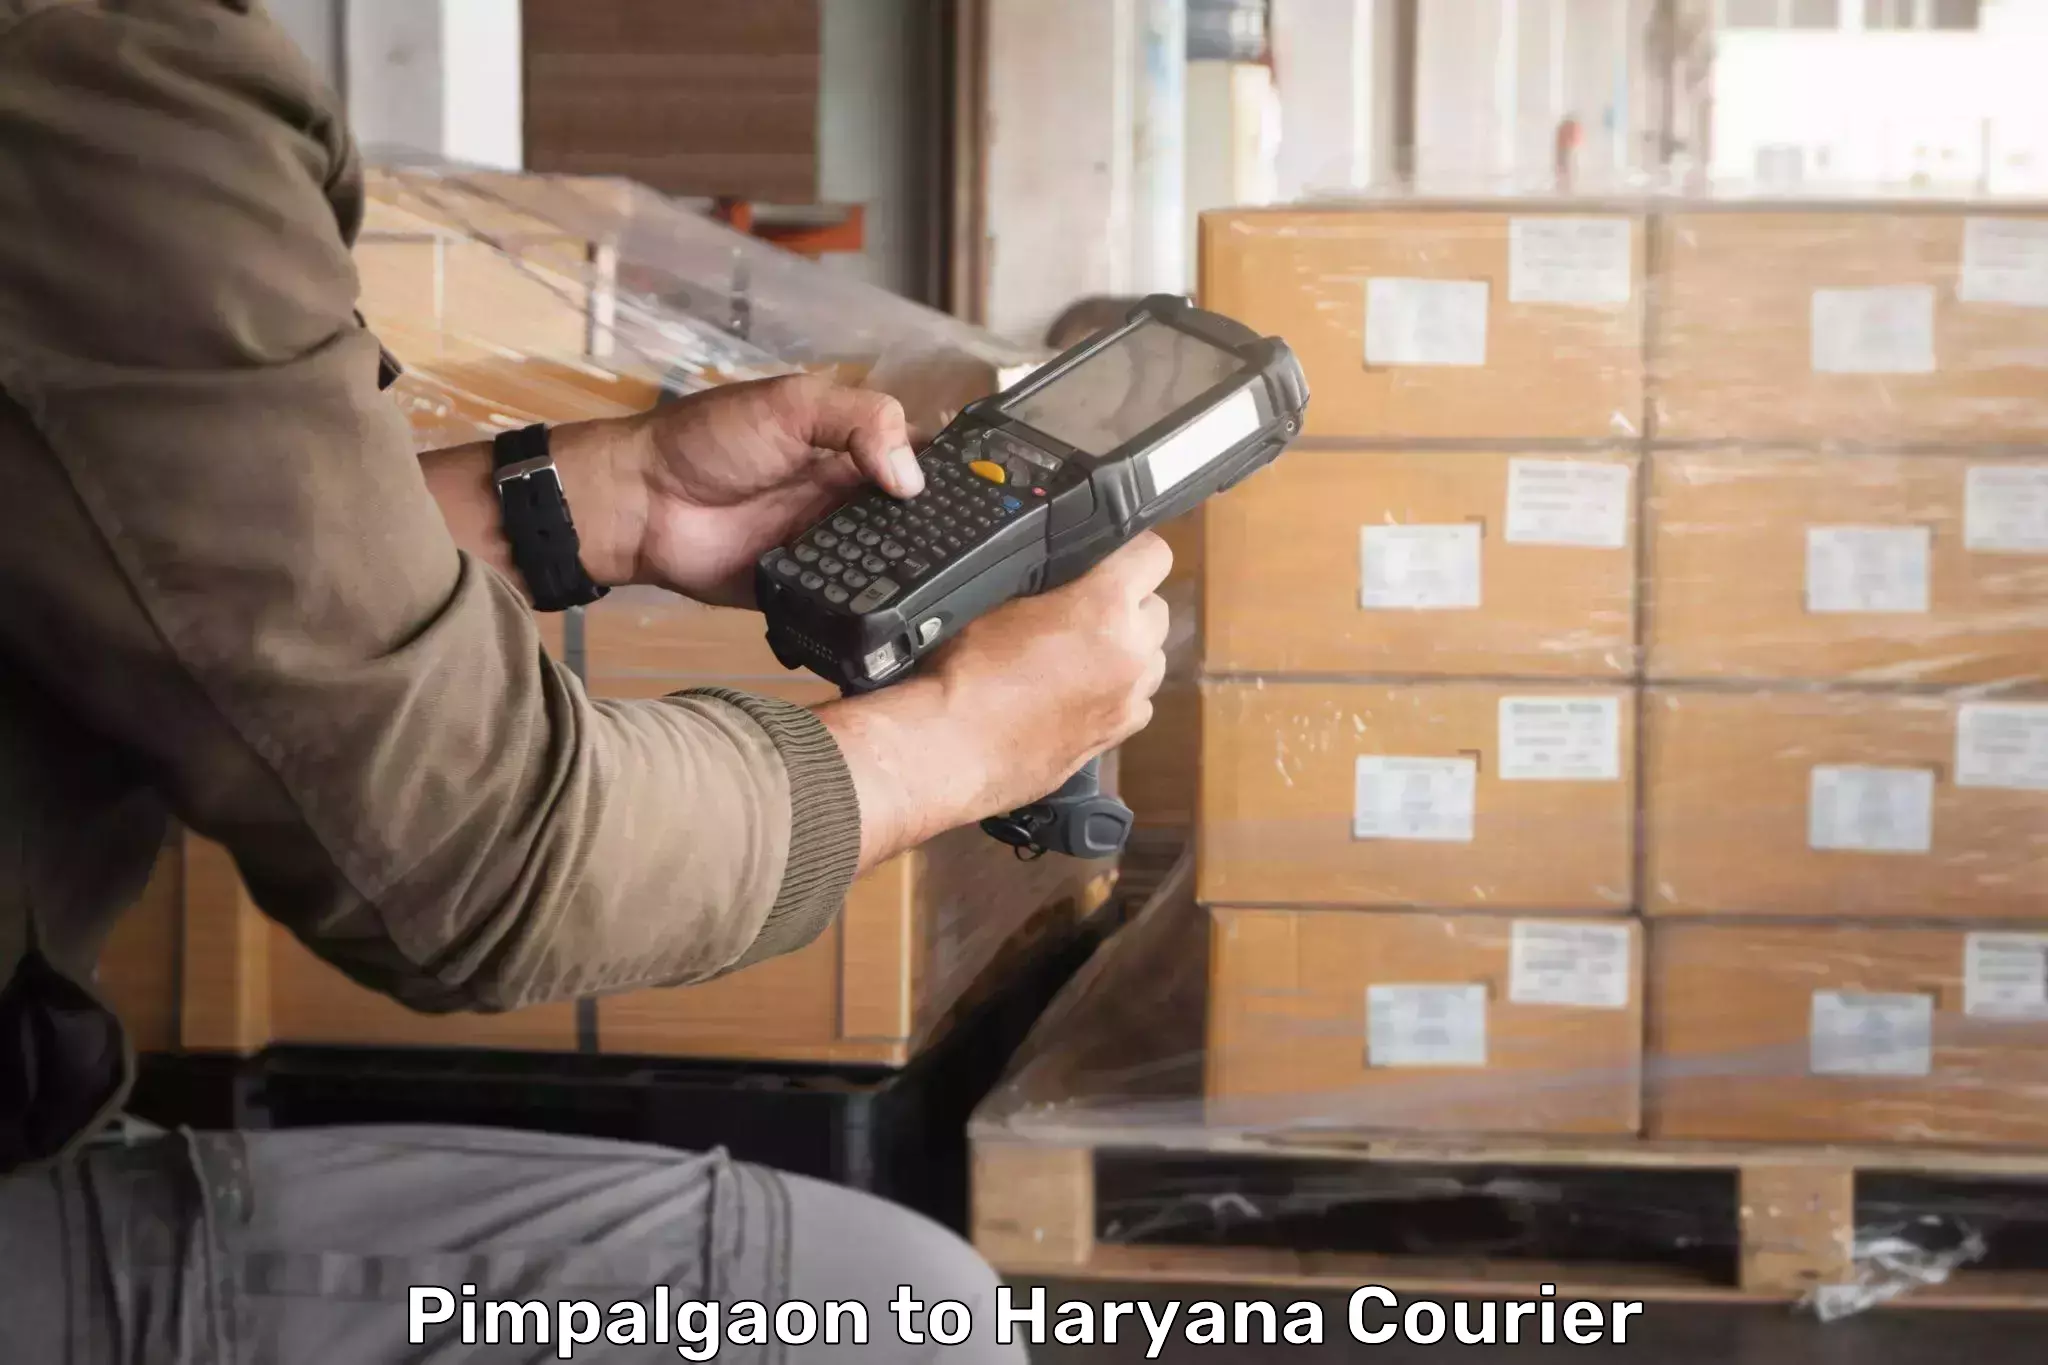 Express delivery capabilities Pimpalgaon to Rohtak